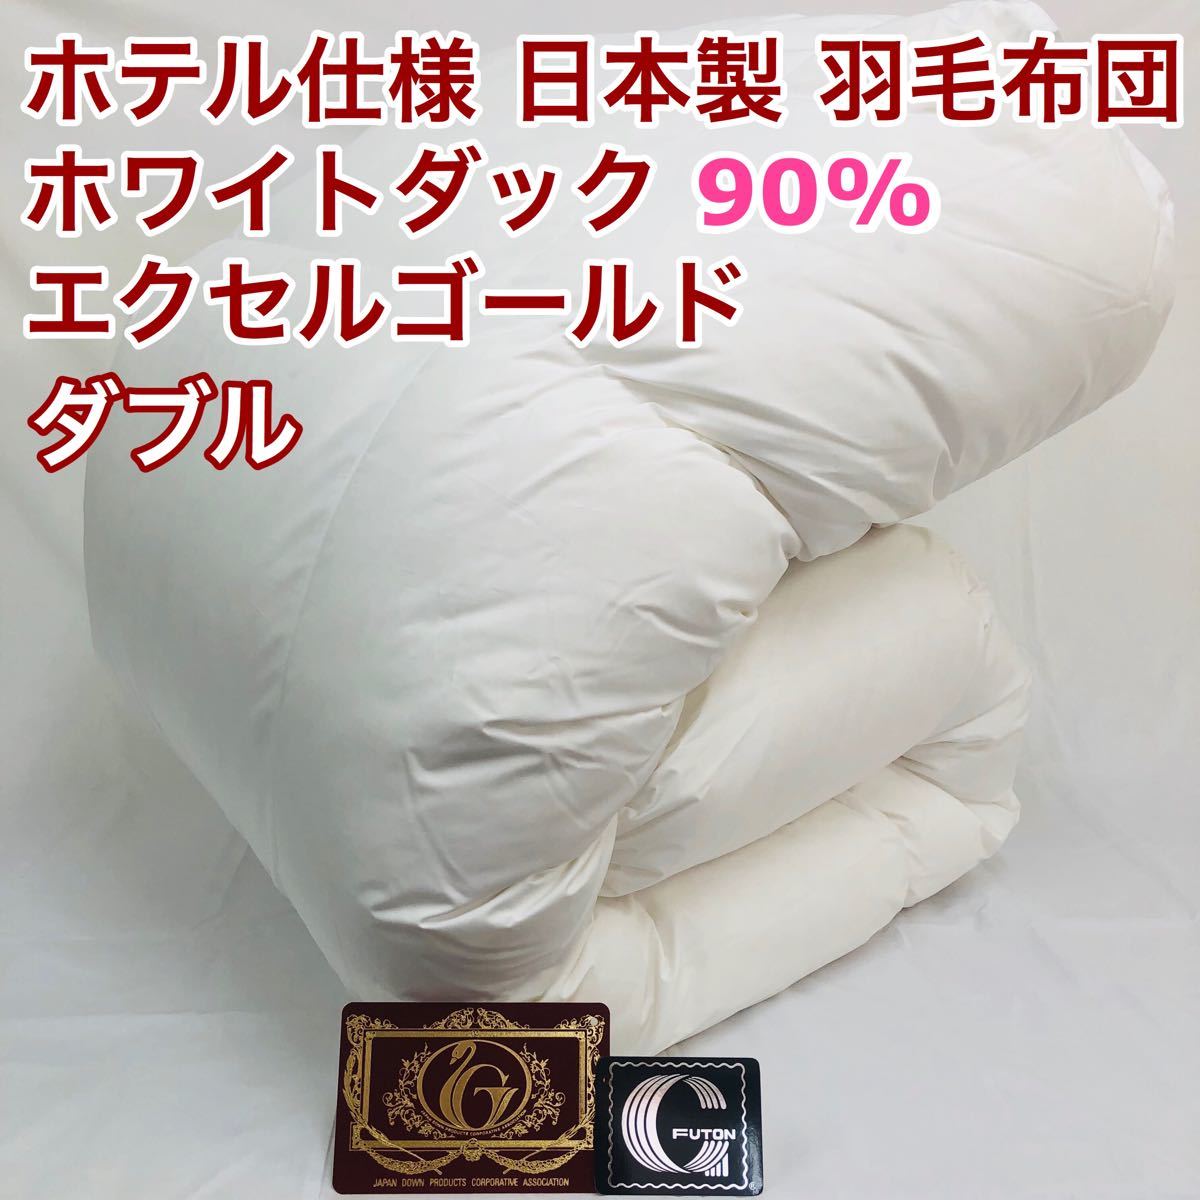 35％割引新着 羽毛布団 ダブル ホワイトダック90% 日本製 エクセルゴールド 布団 寝具-SOLCALOJA.MED.EC